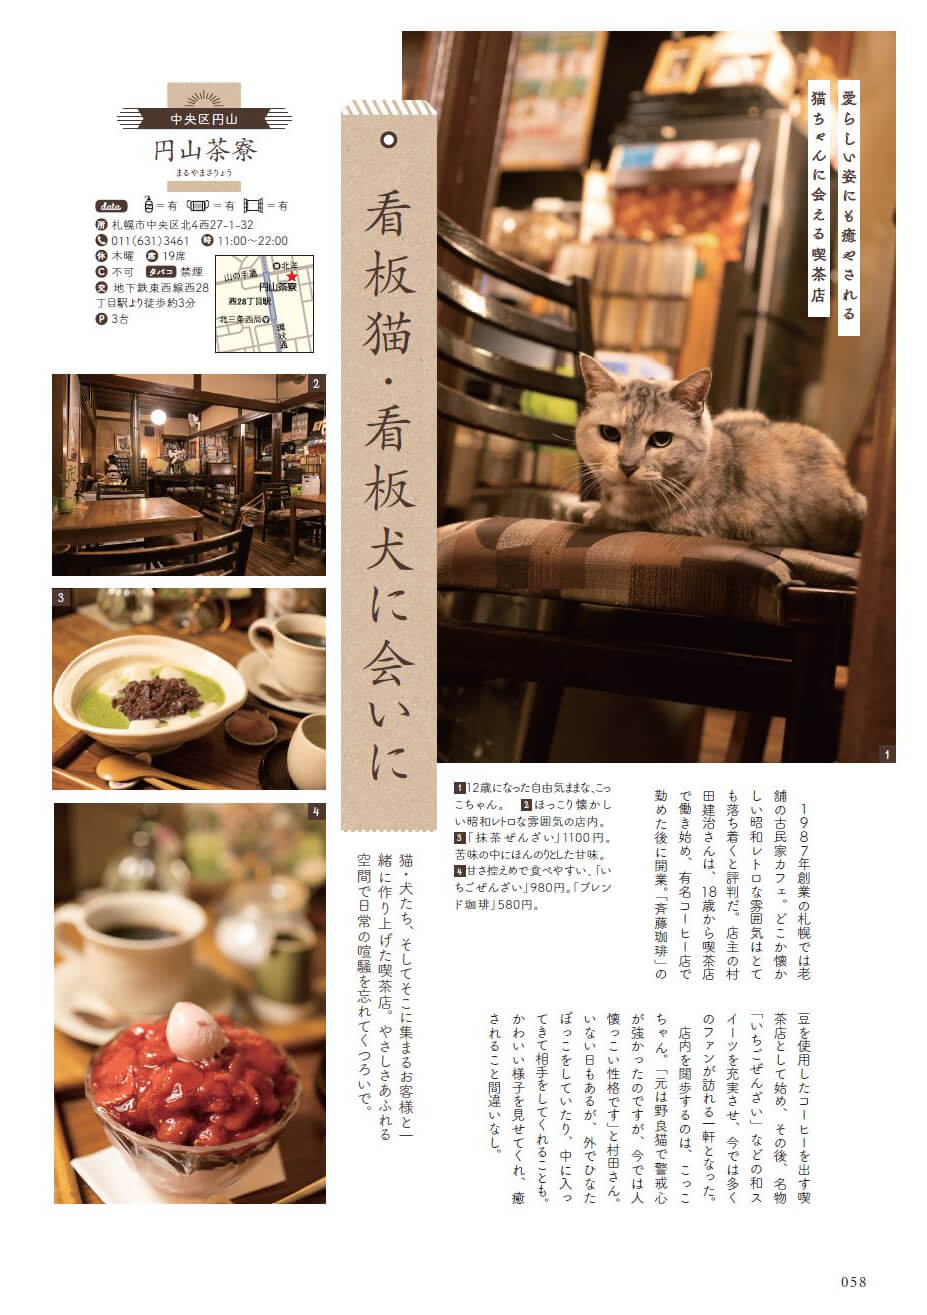 猫に会える札幌の喫茶店「円山茶寮」紹介記事ページ